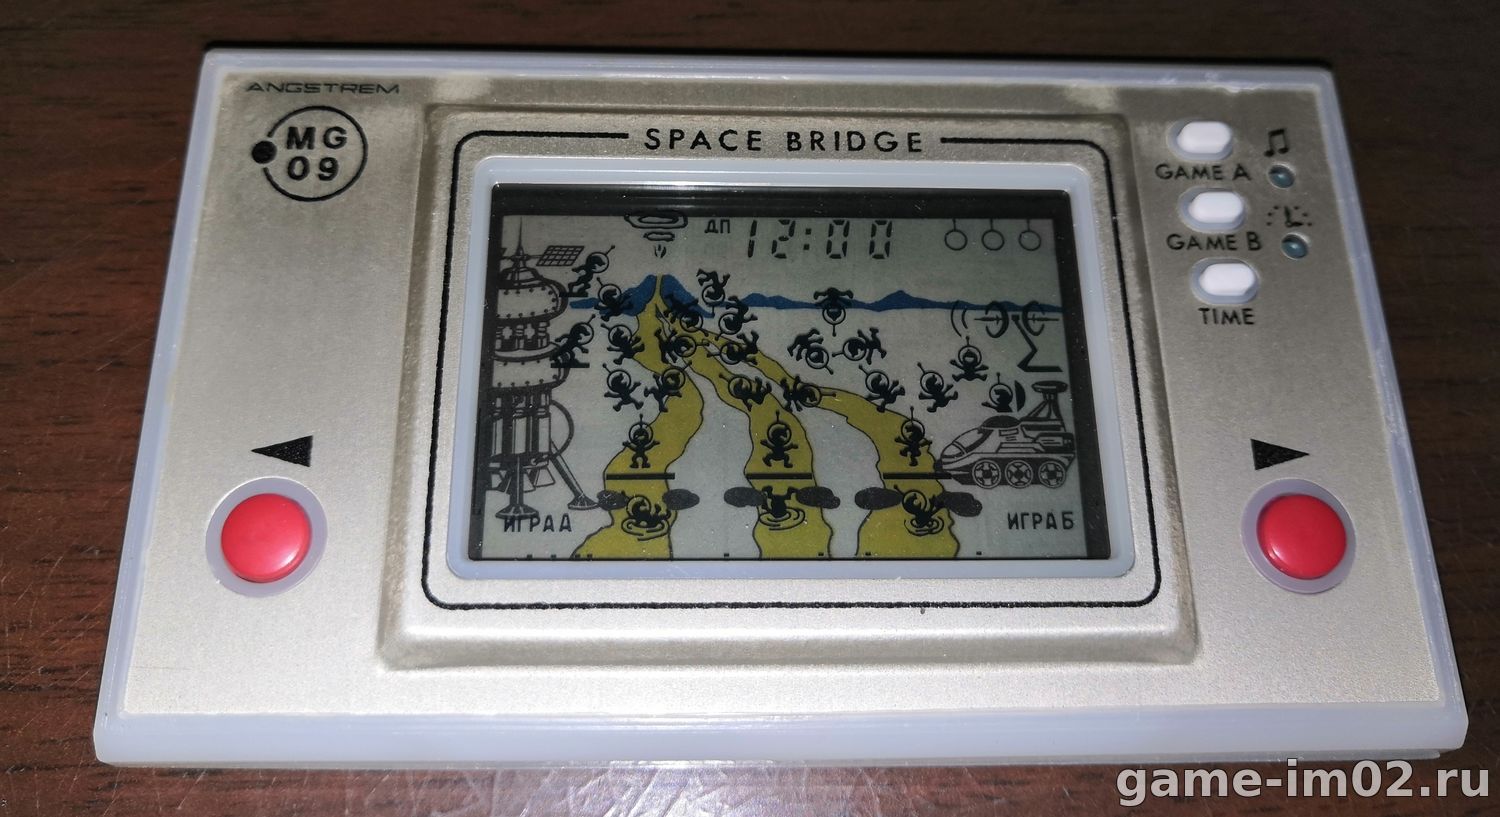 Тайны океана купить. «Электроника» — игр «тайны океана» и «ну, погоди!». Электроника им-09. Космический мост. Электроника им-09 «космический мост» (1989 г.). Электроника «электроника 409-вку».